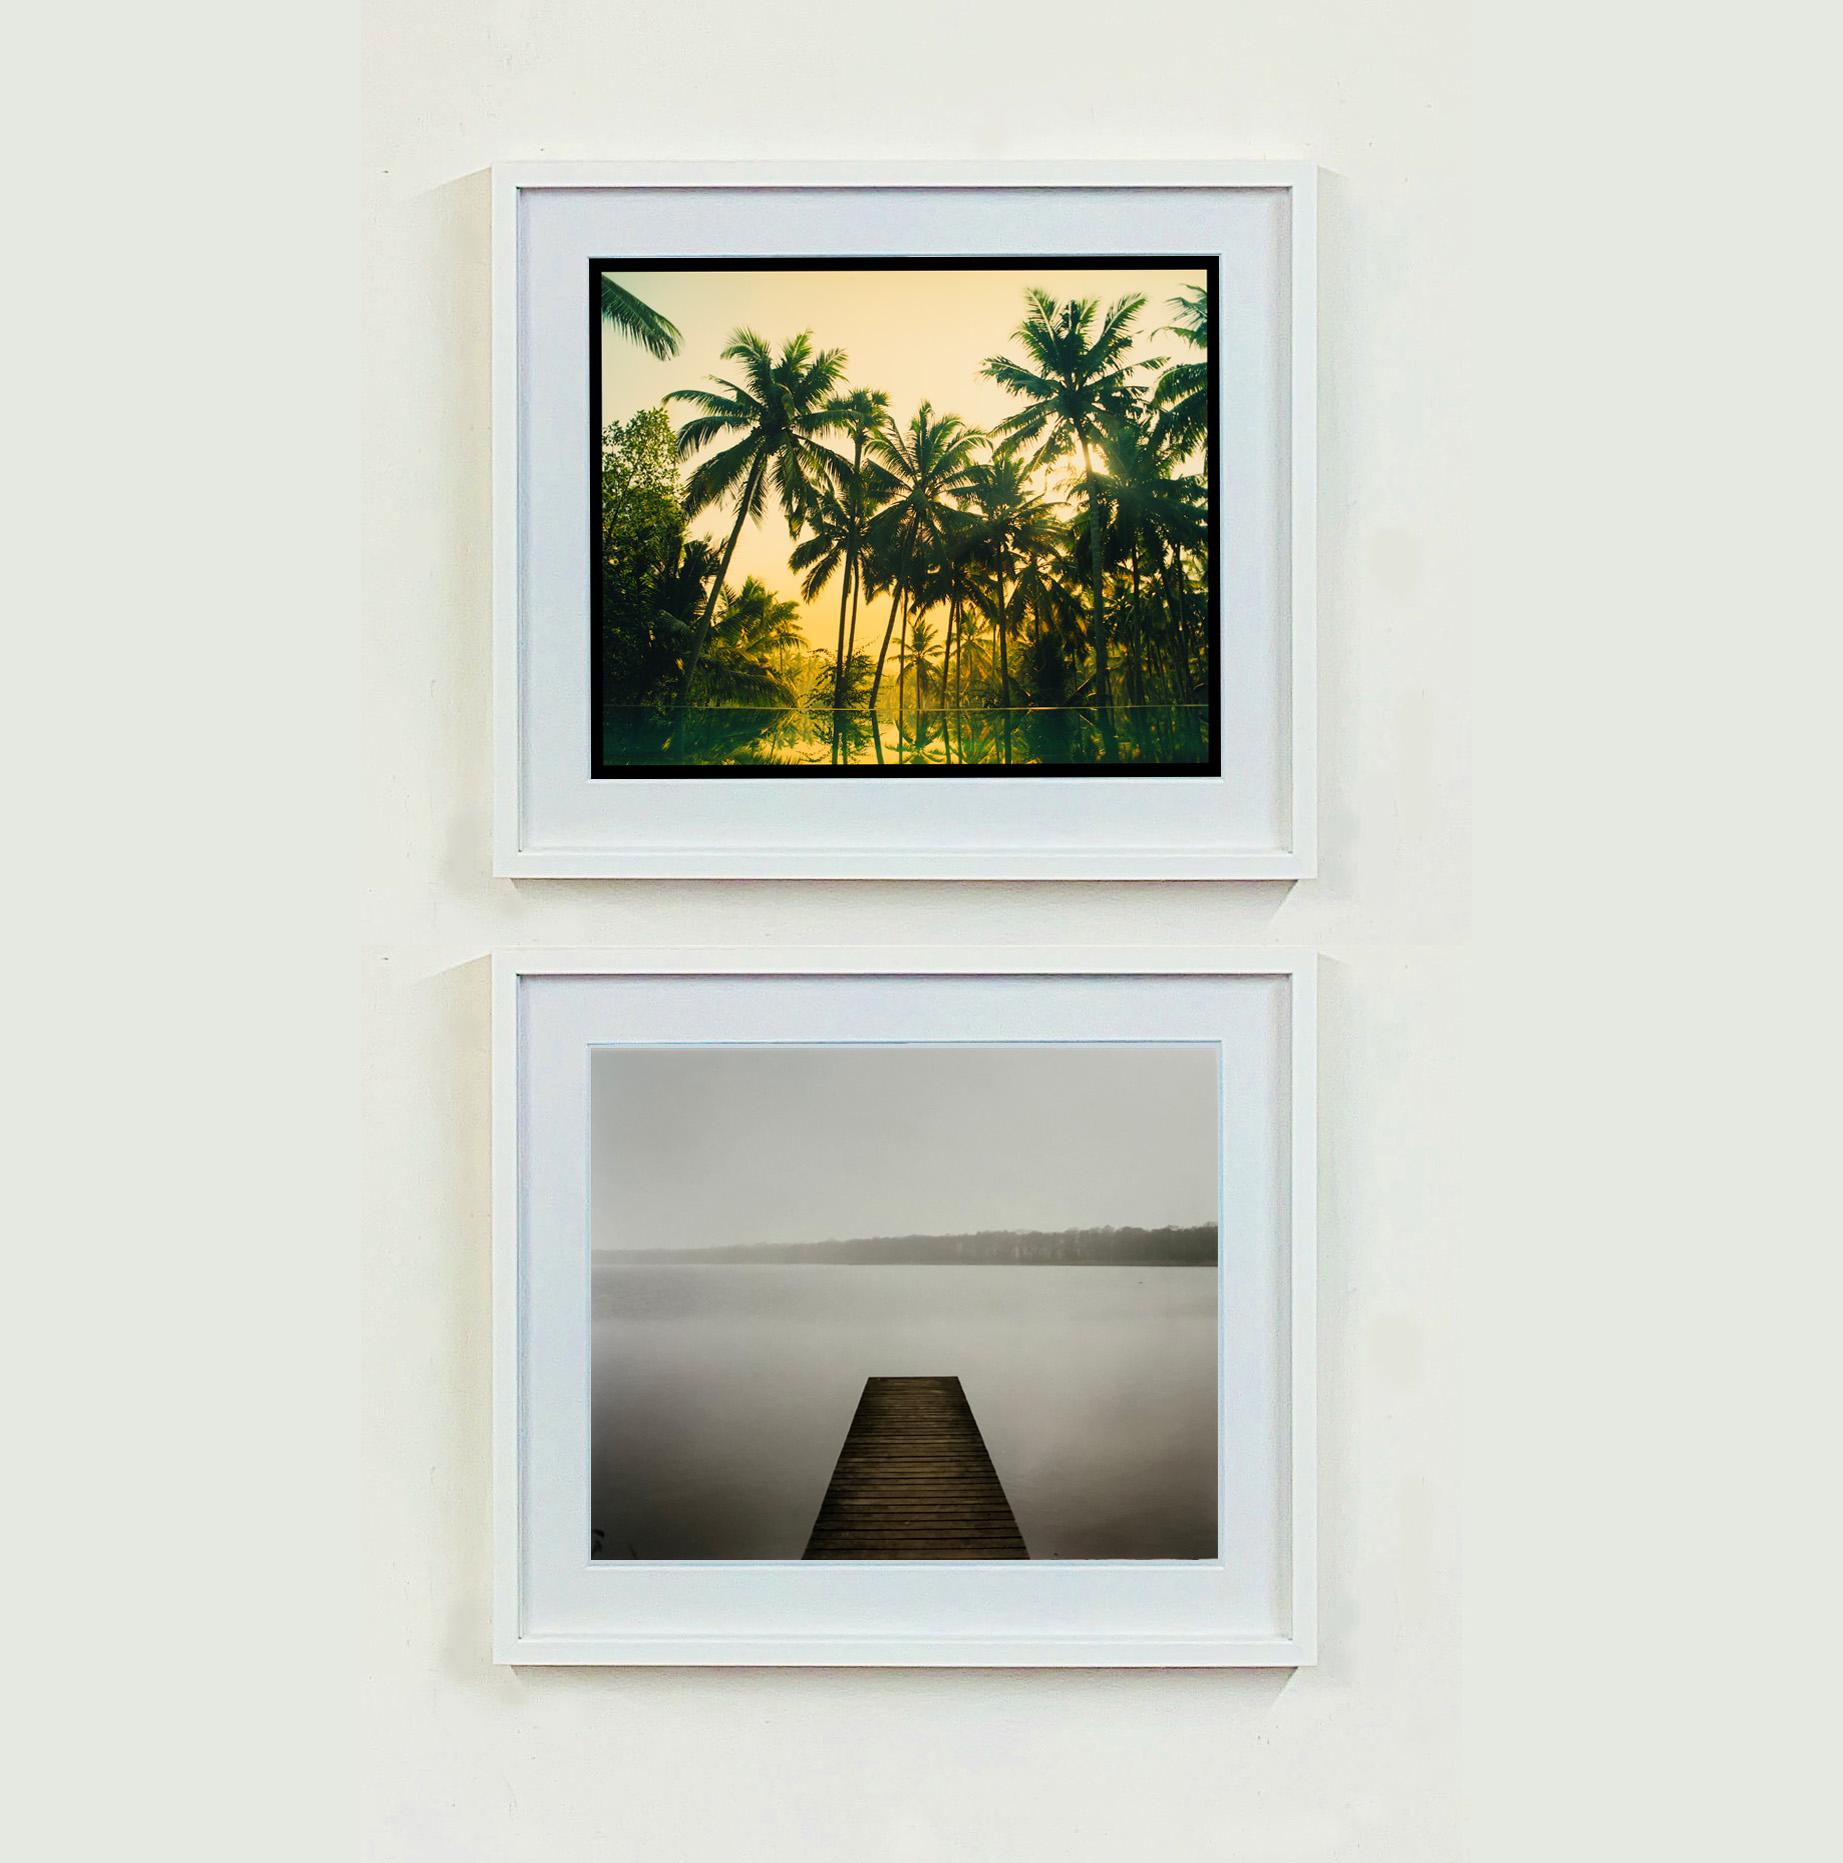 Vetyver Pool, Foto aus Richard Heeps Indien-Serie, The Ambassador's Window.
Auf einer Reise durch Indien, einer Pilgerfahrt von Kerala im Süden zum Geburtsort seines Großvaters, Meerut, im Norden. Diese Palmenlagune, die bei Sonnenuntergang in